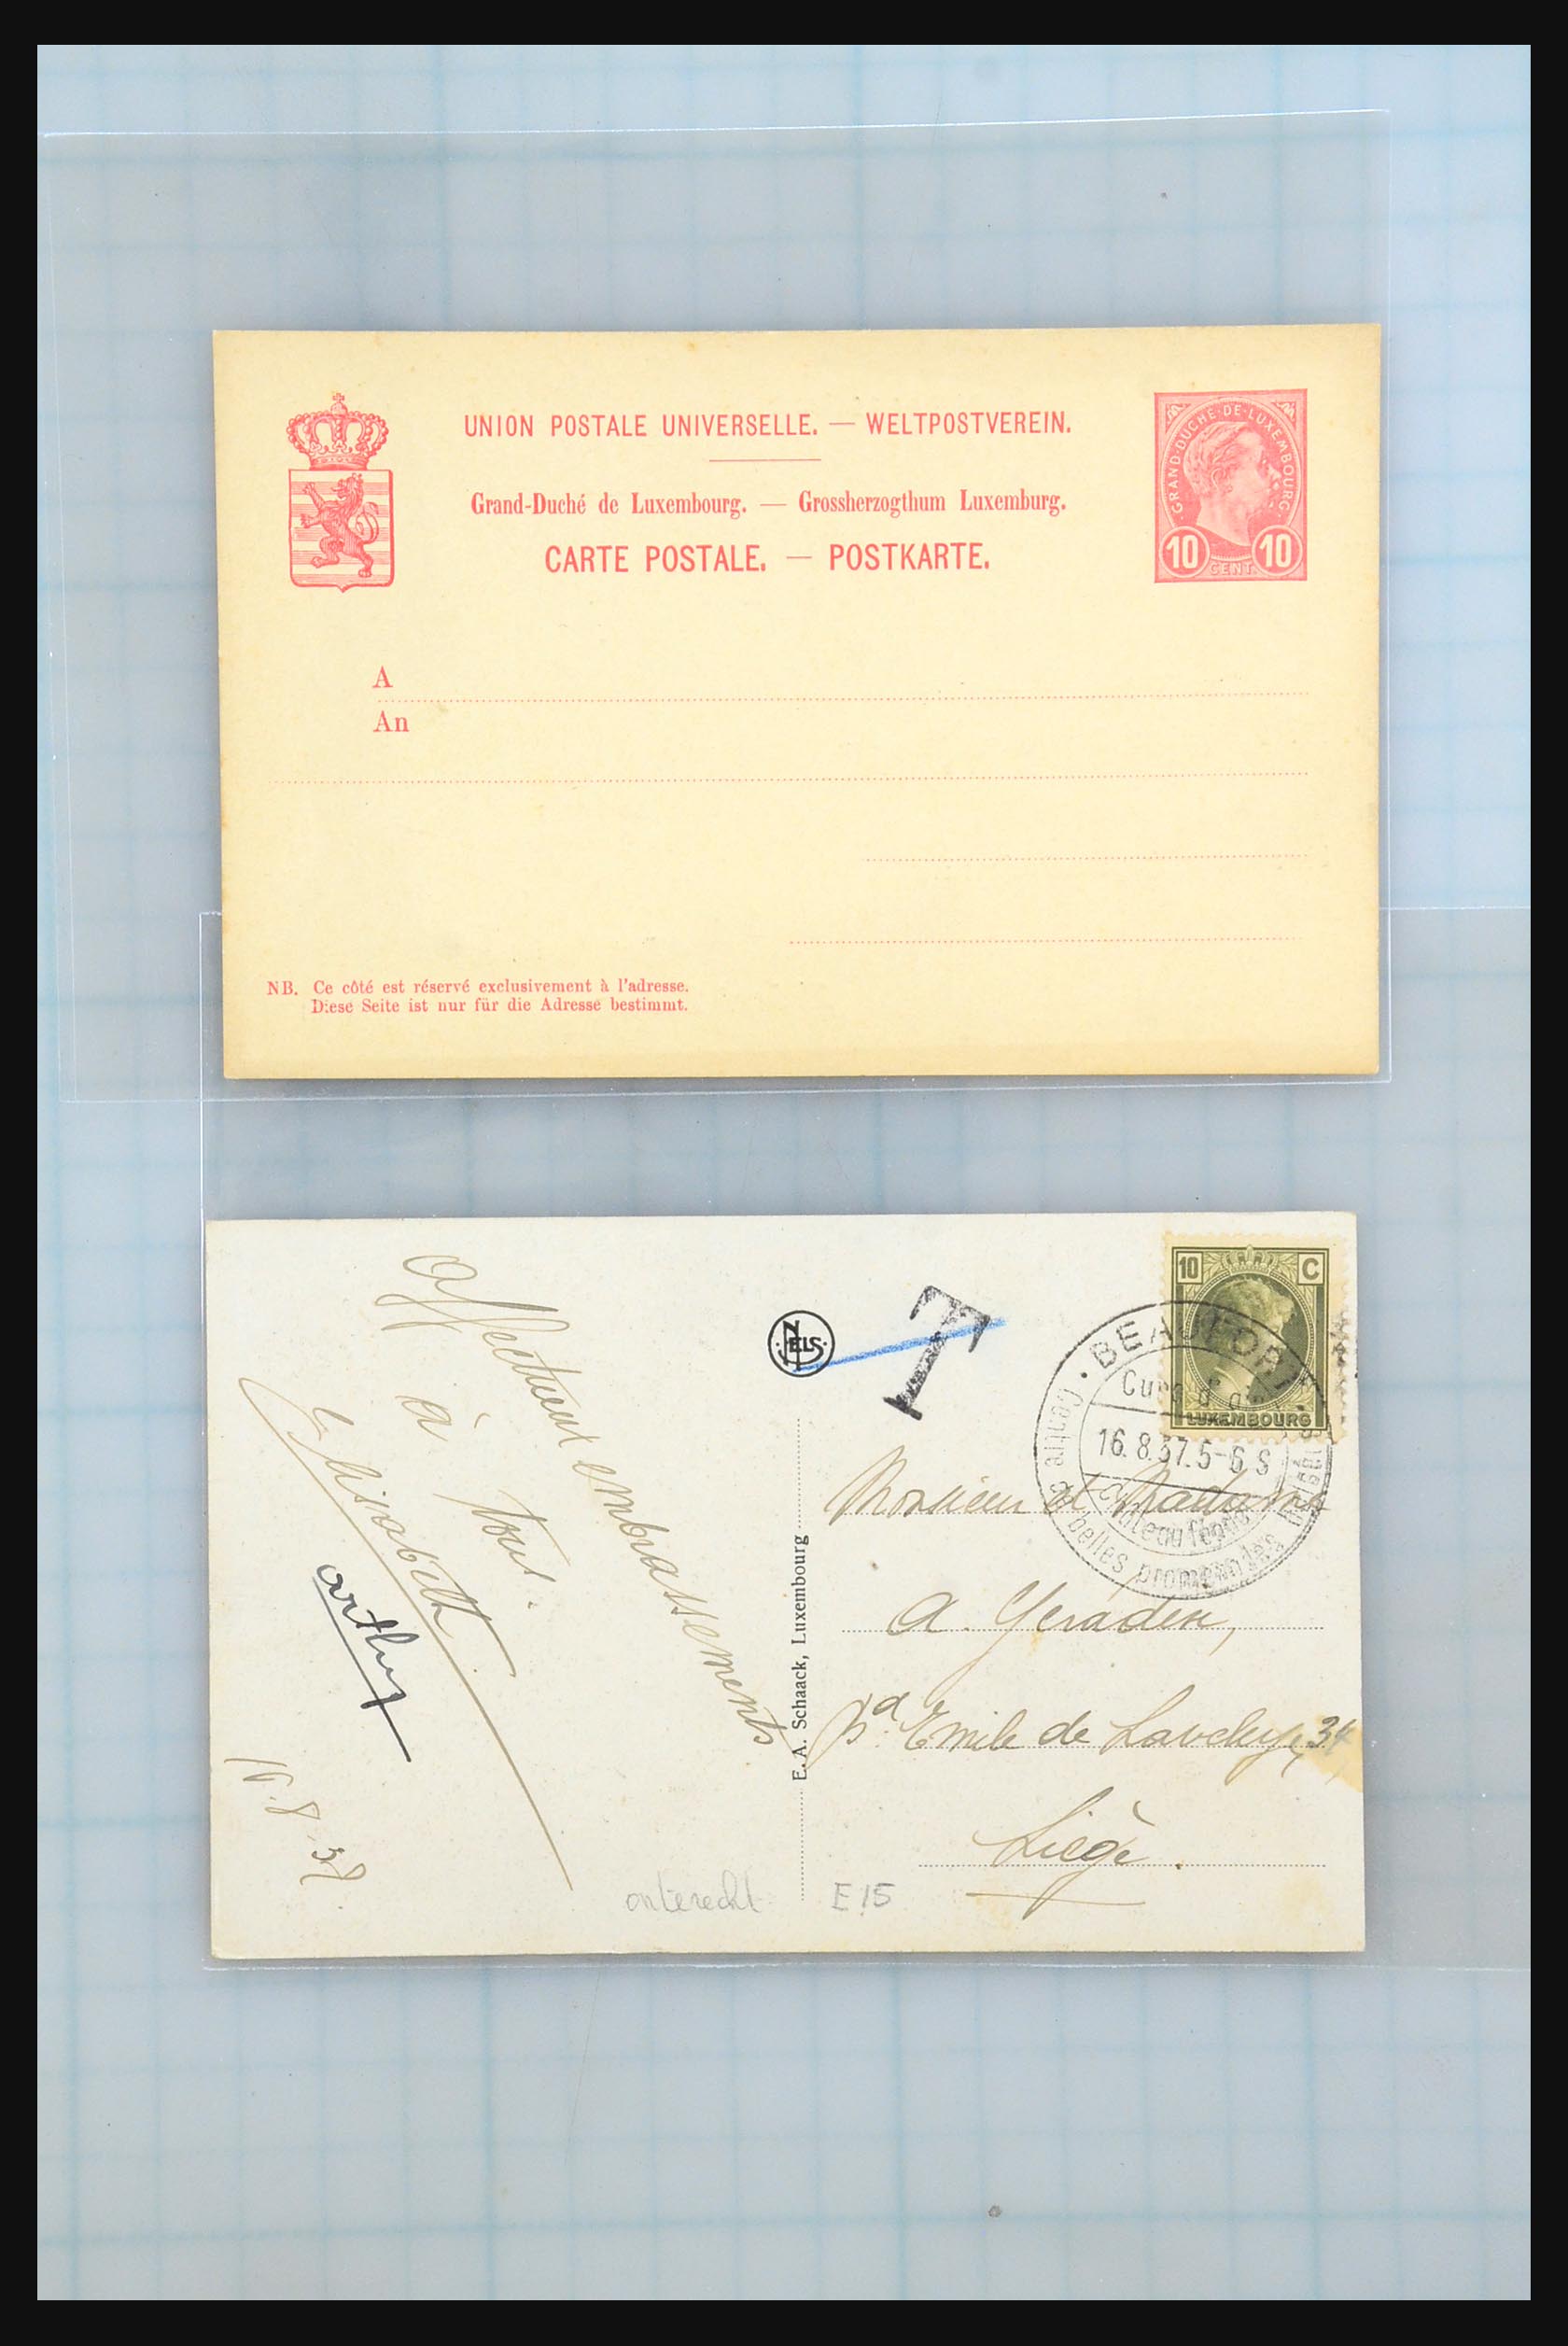 31358 069 - 31358 Portugal/Luxemburg/Griekenland brieven 1880-1960.